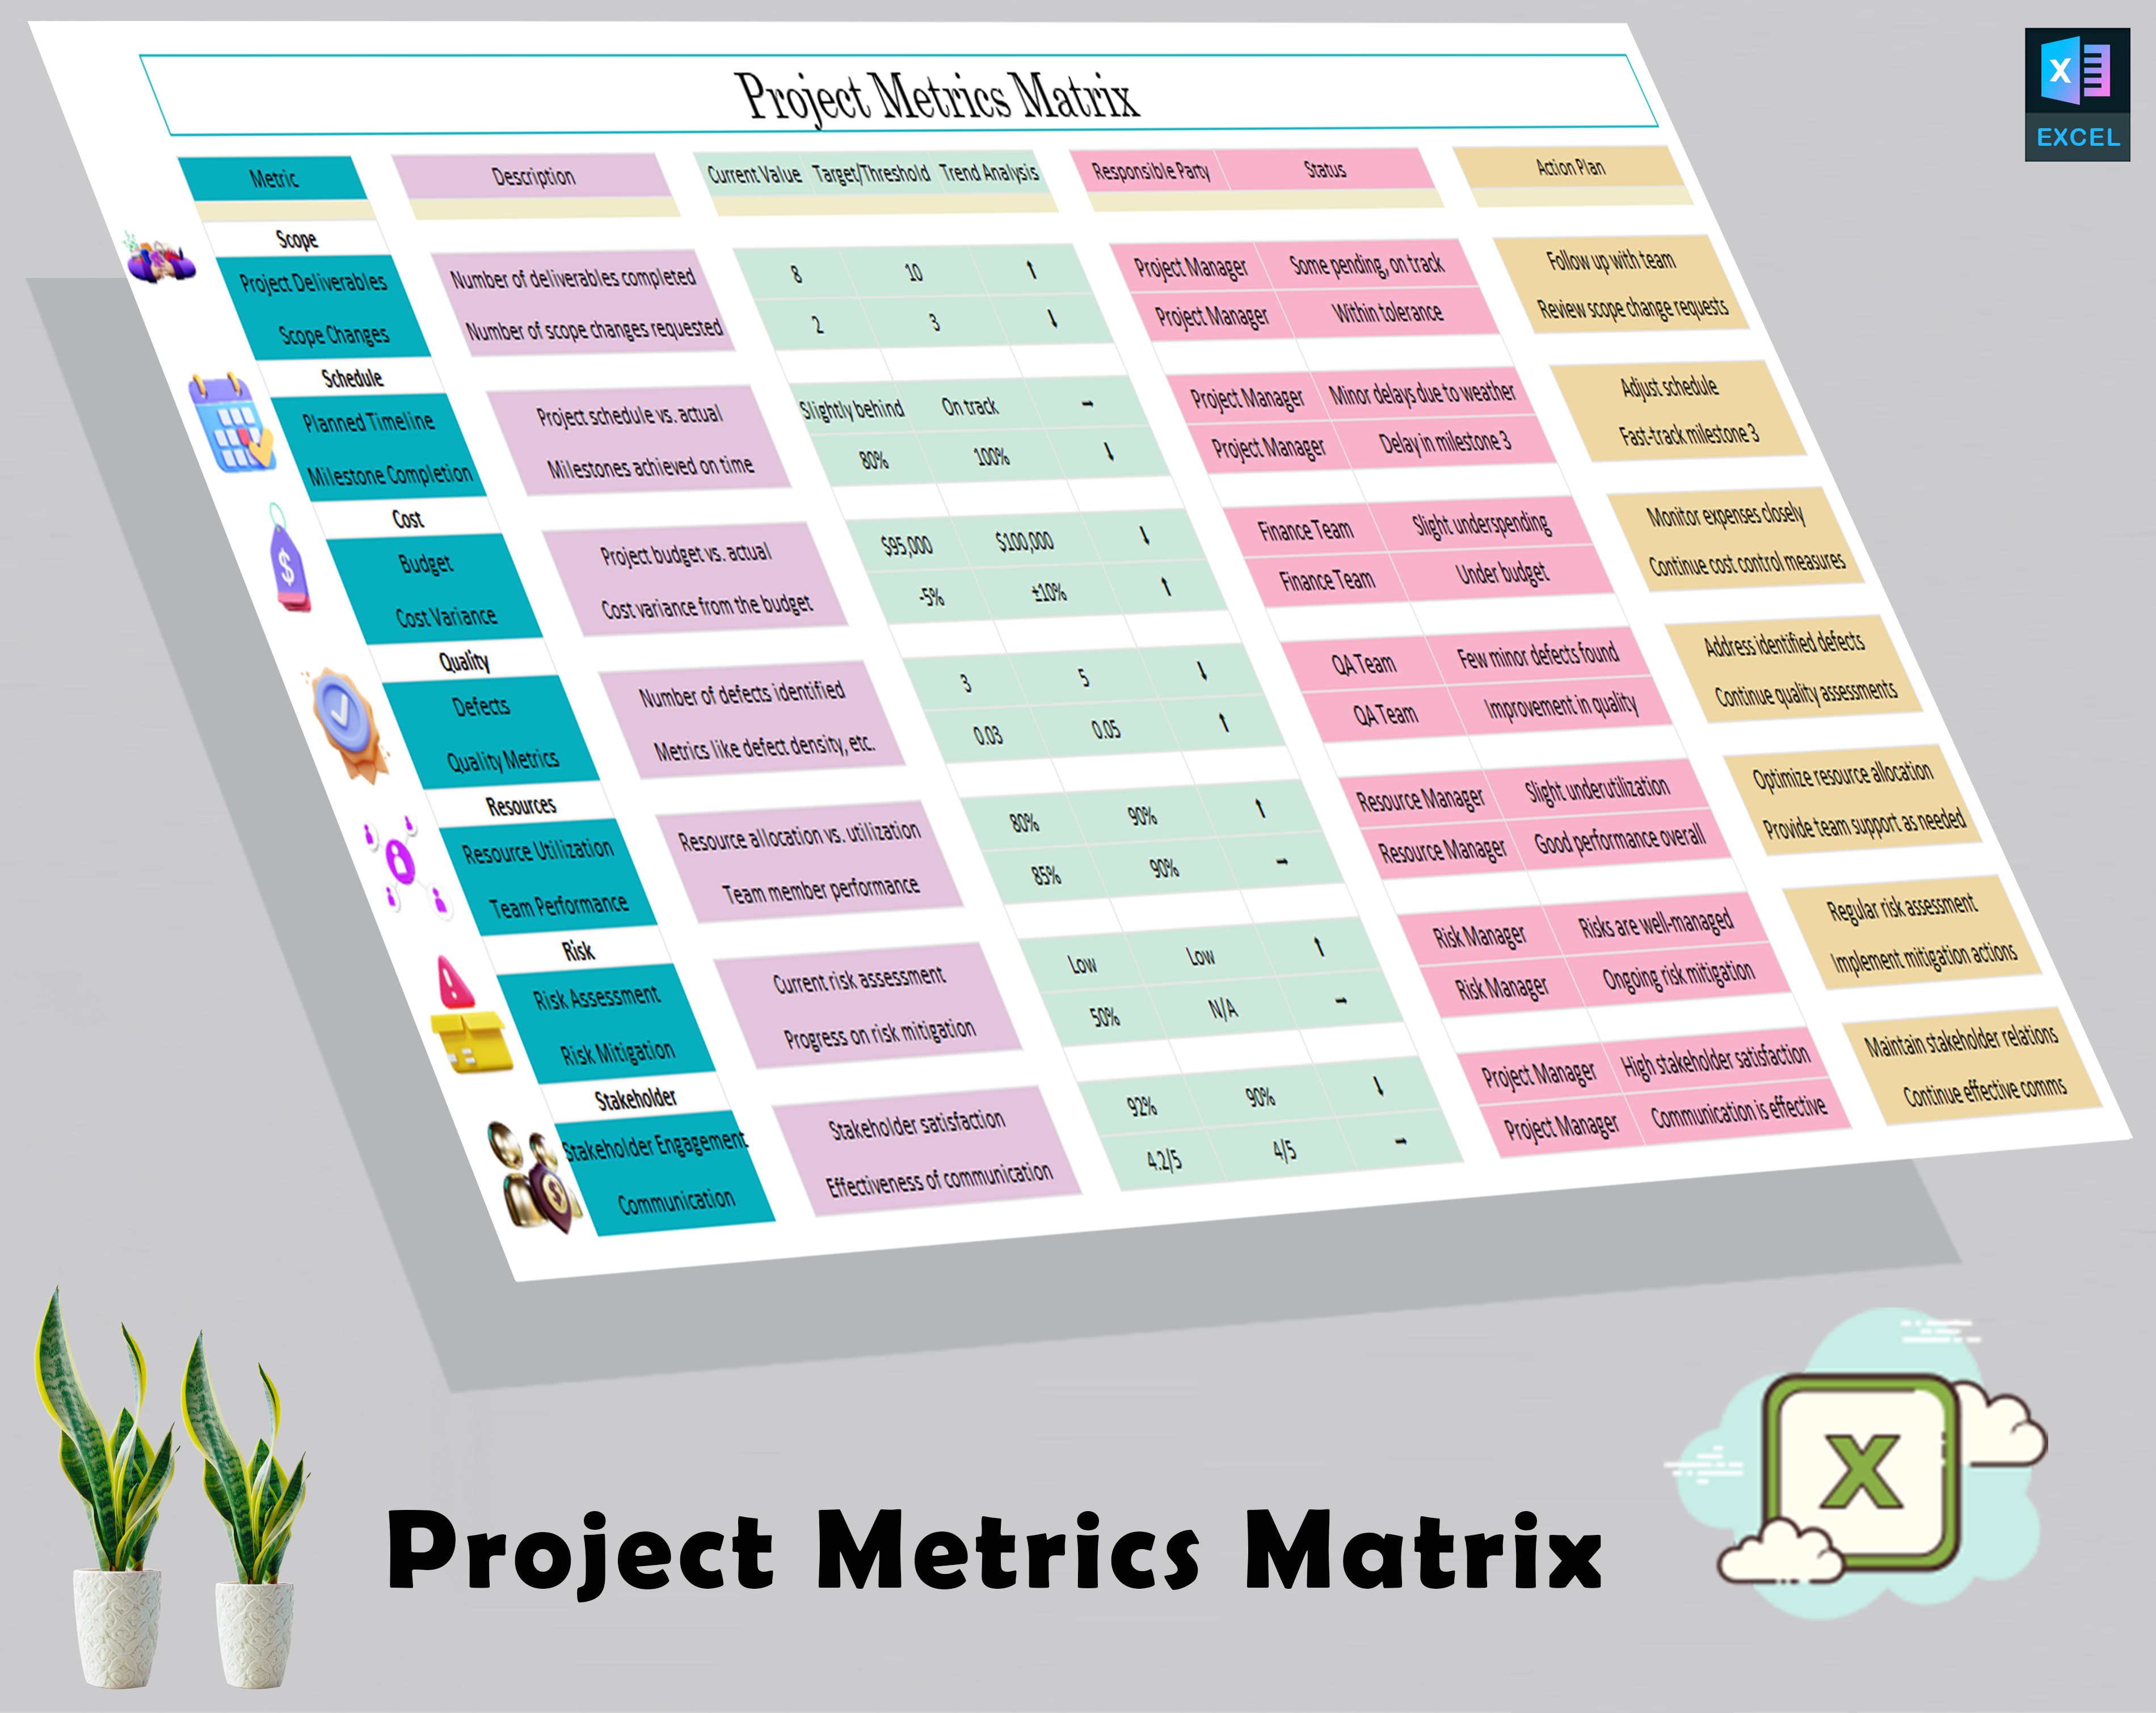 Project Metrics Matrix